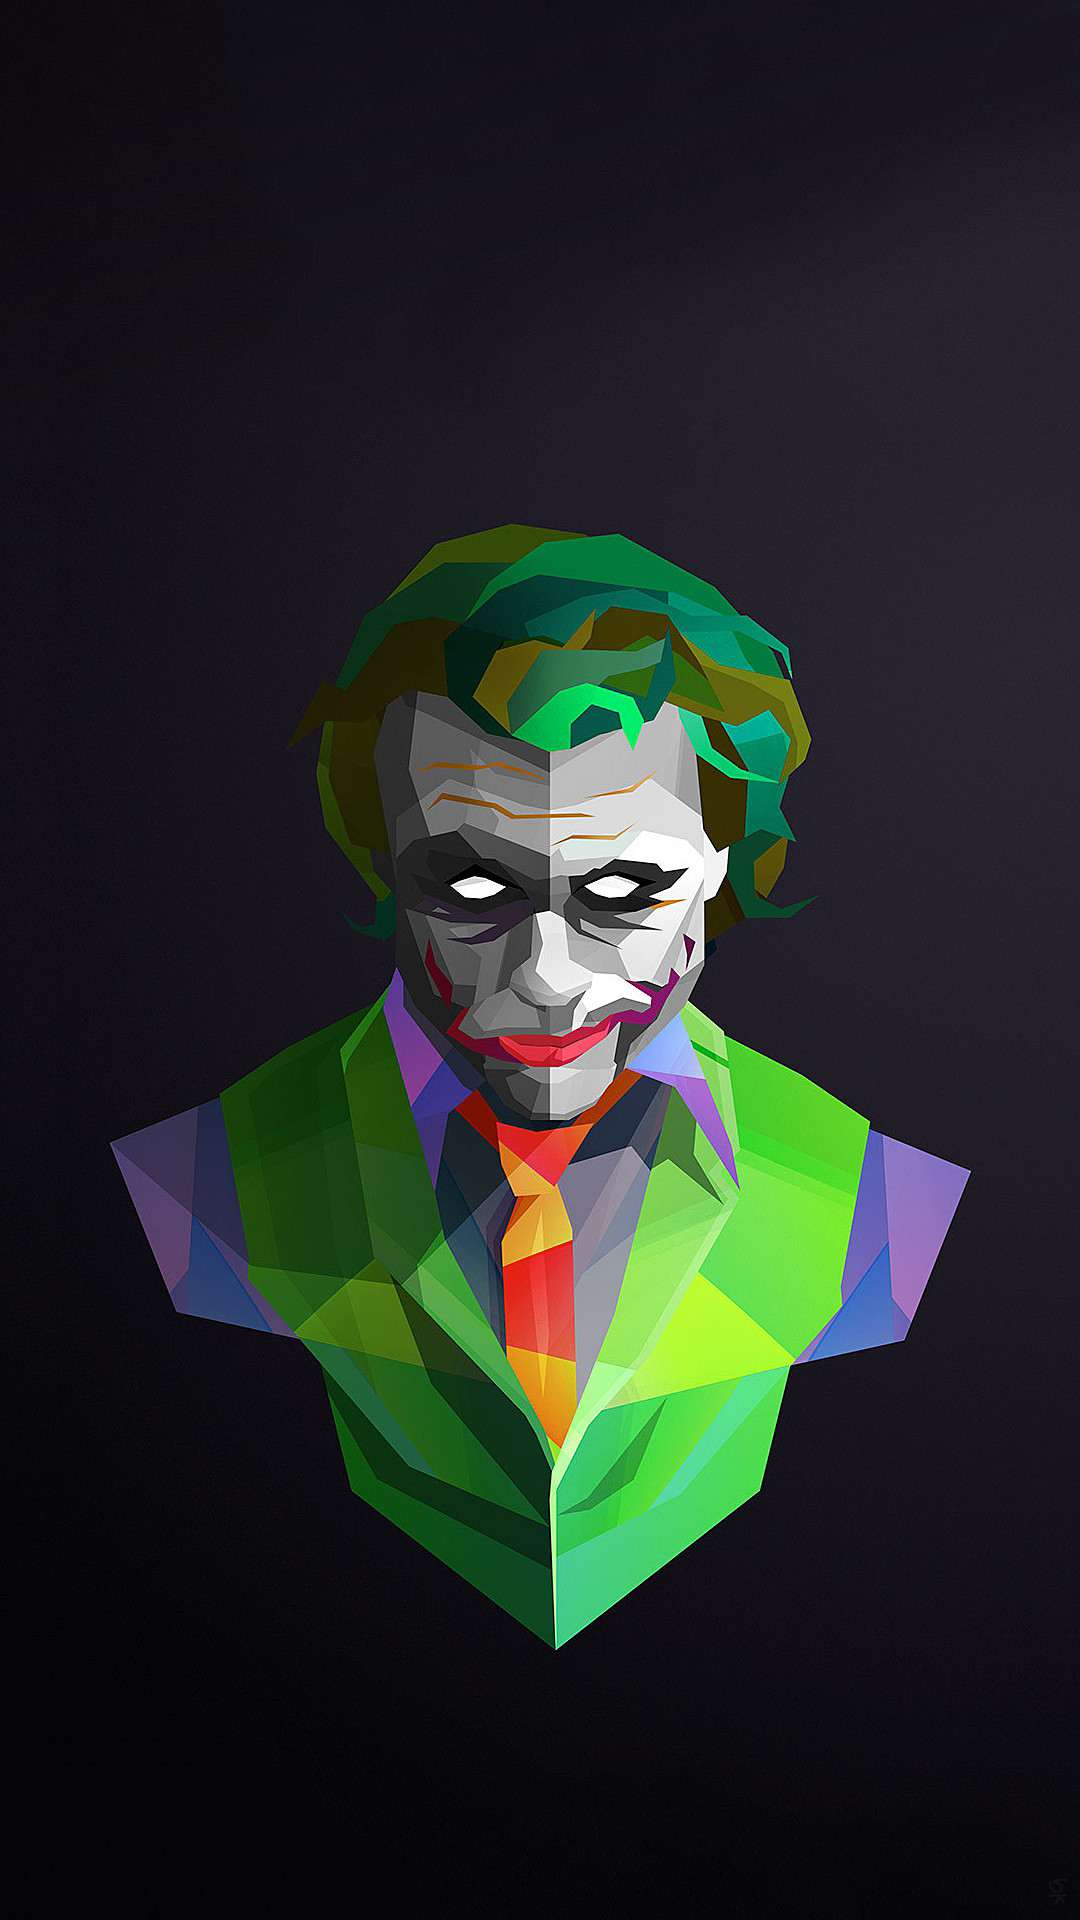 1080x1920 Best 25+ Heath ledger joker wallpaper ideas only on Pinterest | Batman joker  wallpaper, Joker background and Joker iphone wallpaper